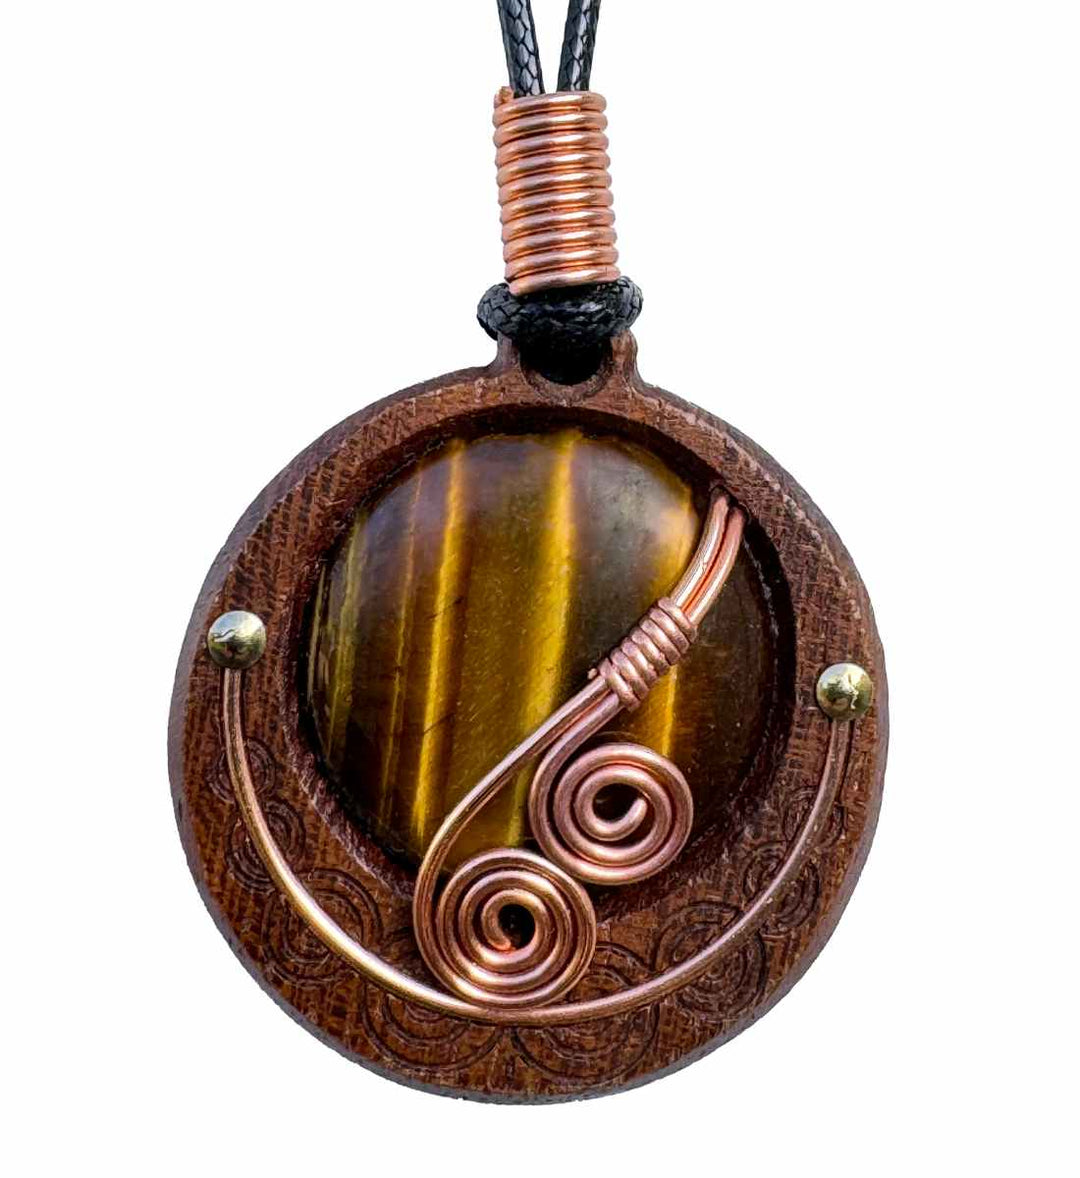 Handgefertigte Runental Holz Halskette mit Druidenspirale und Tigerauge, inspiriert von keltischer Mythologie